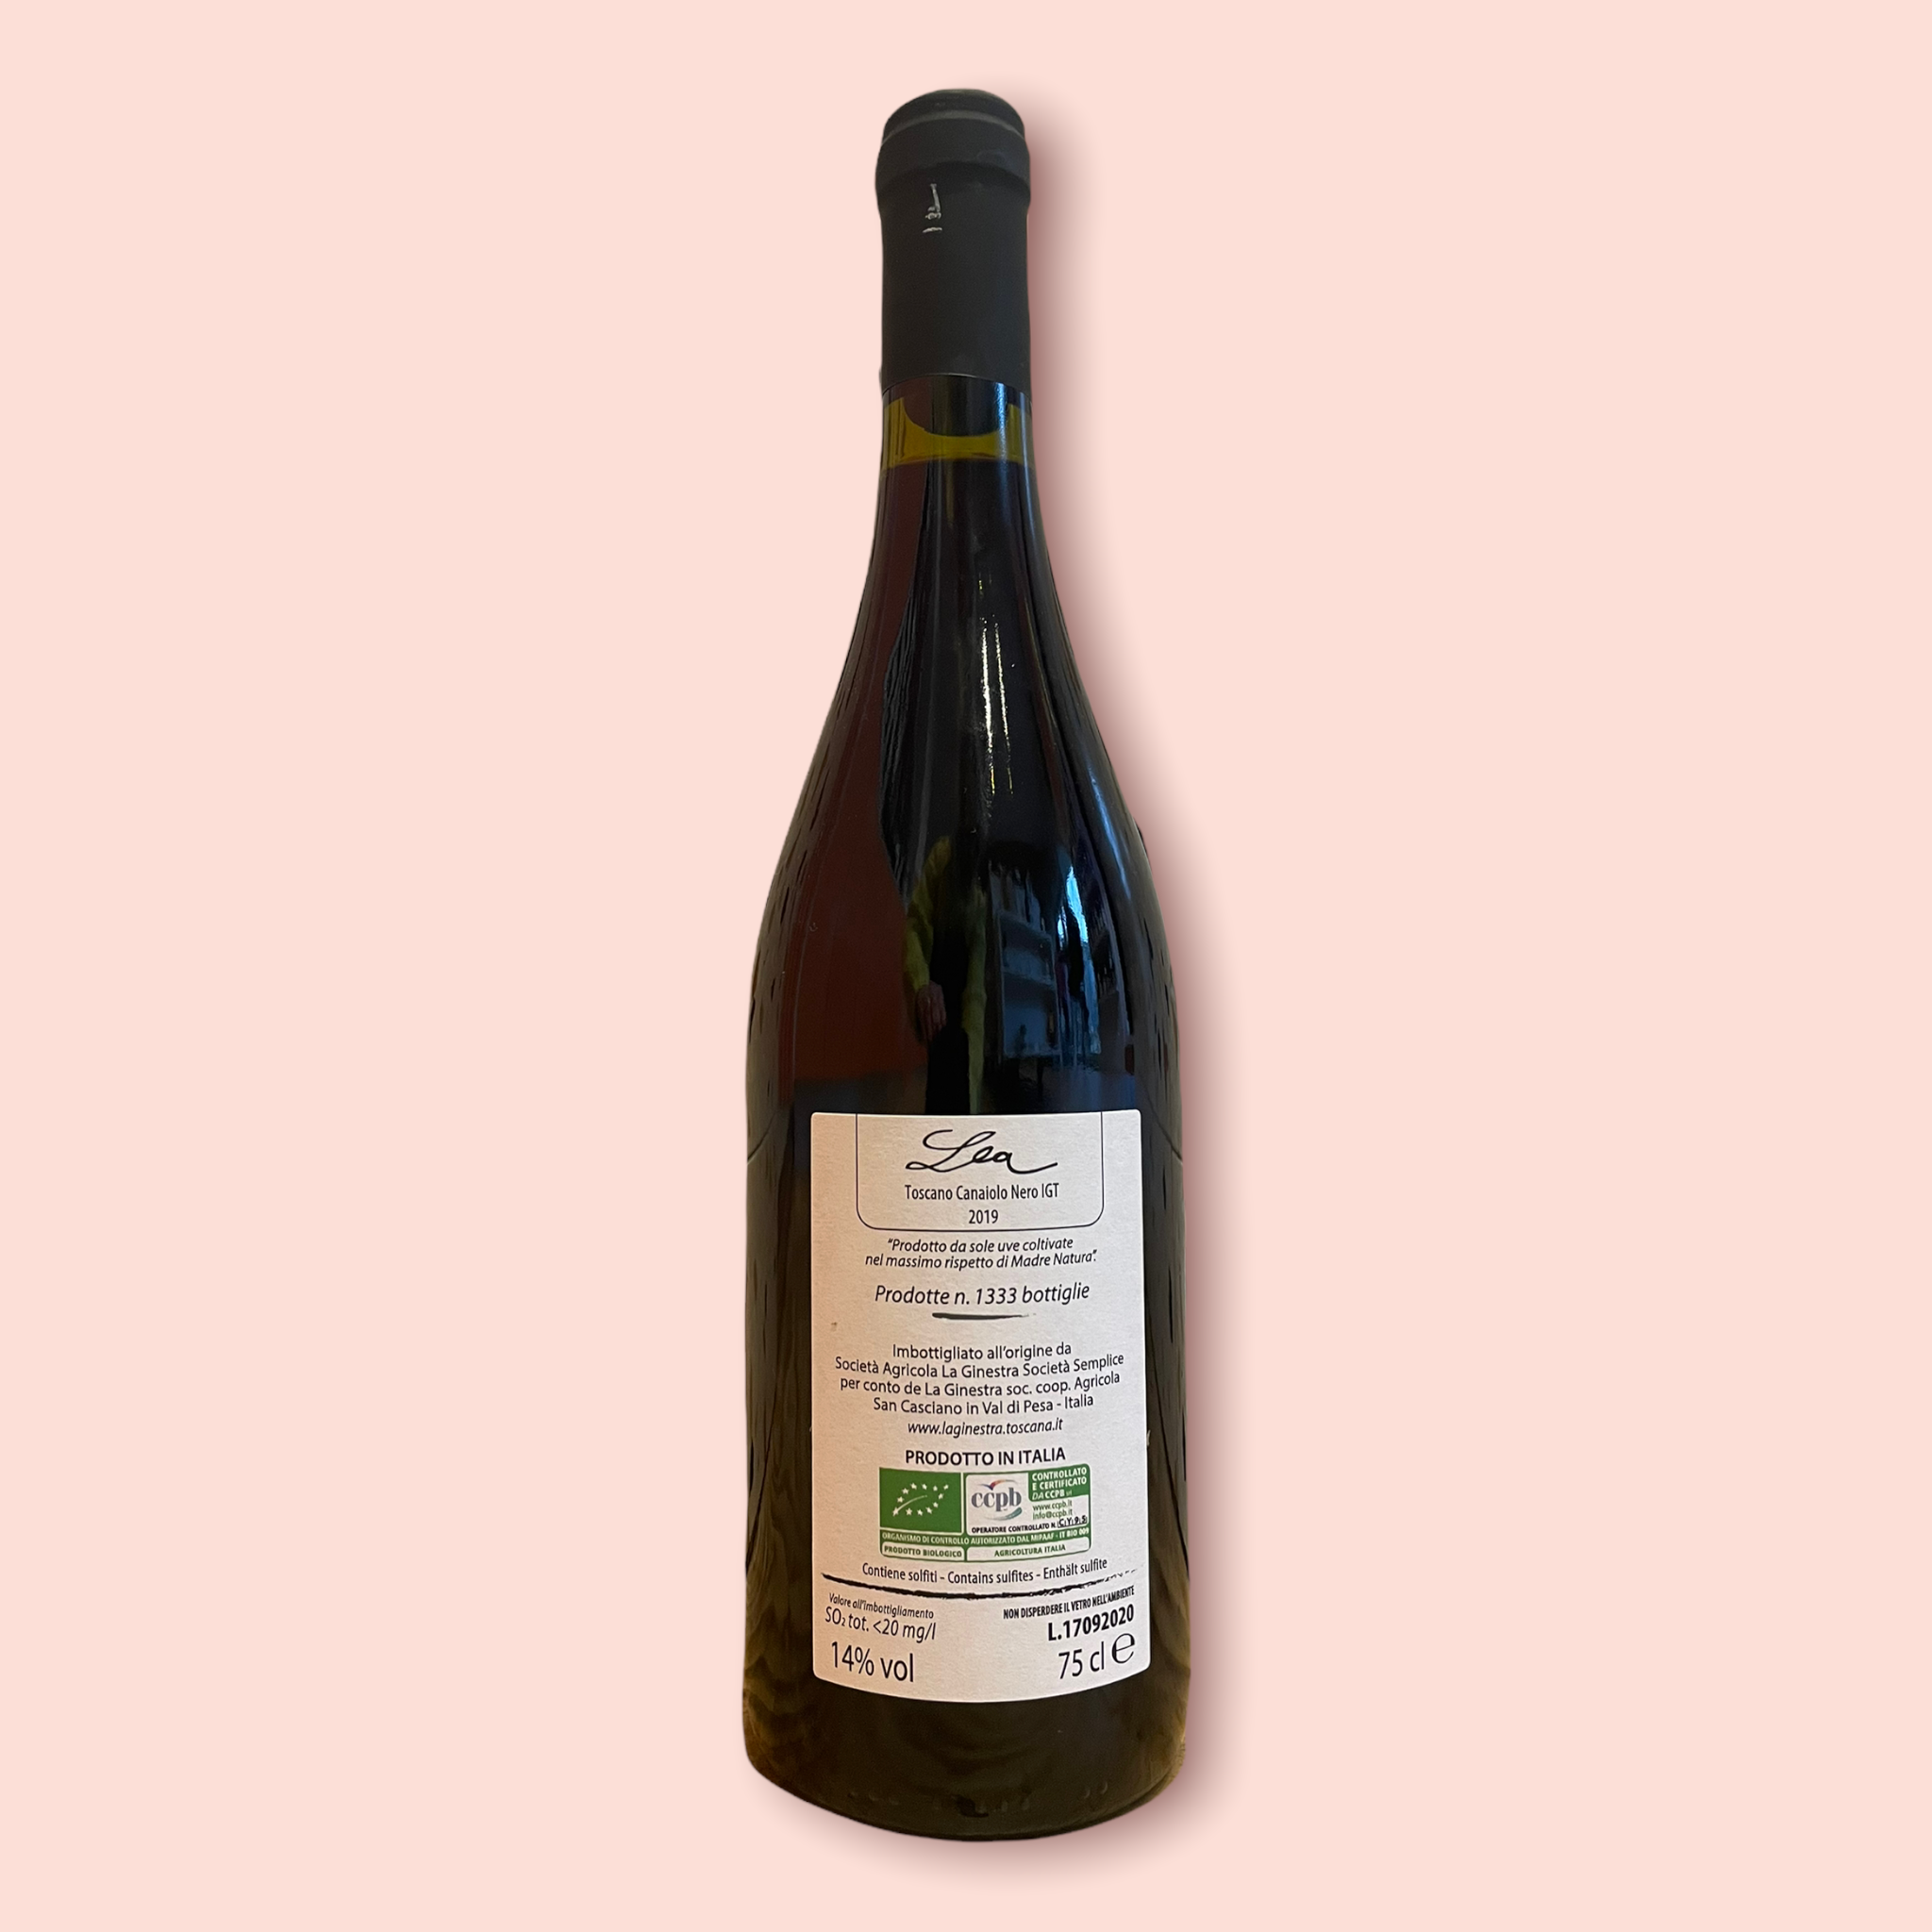 Wine recommendations and reviews/ Weinempfehlungen und -kritiken